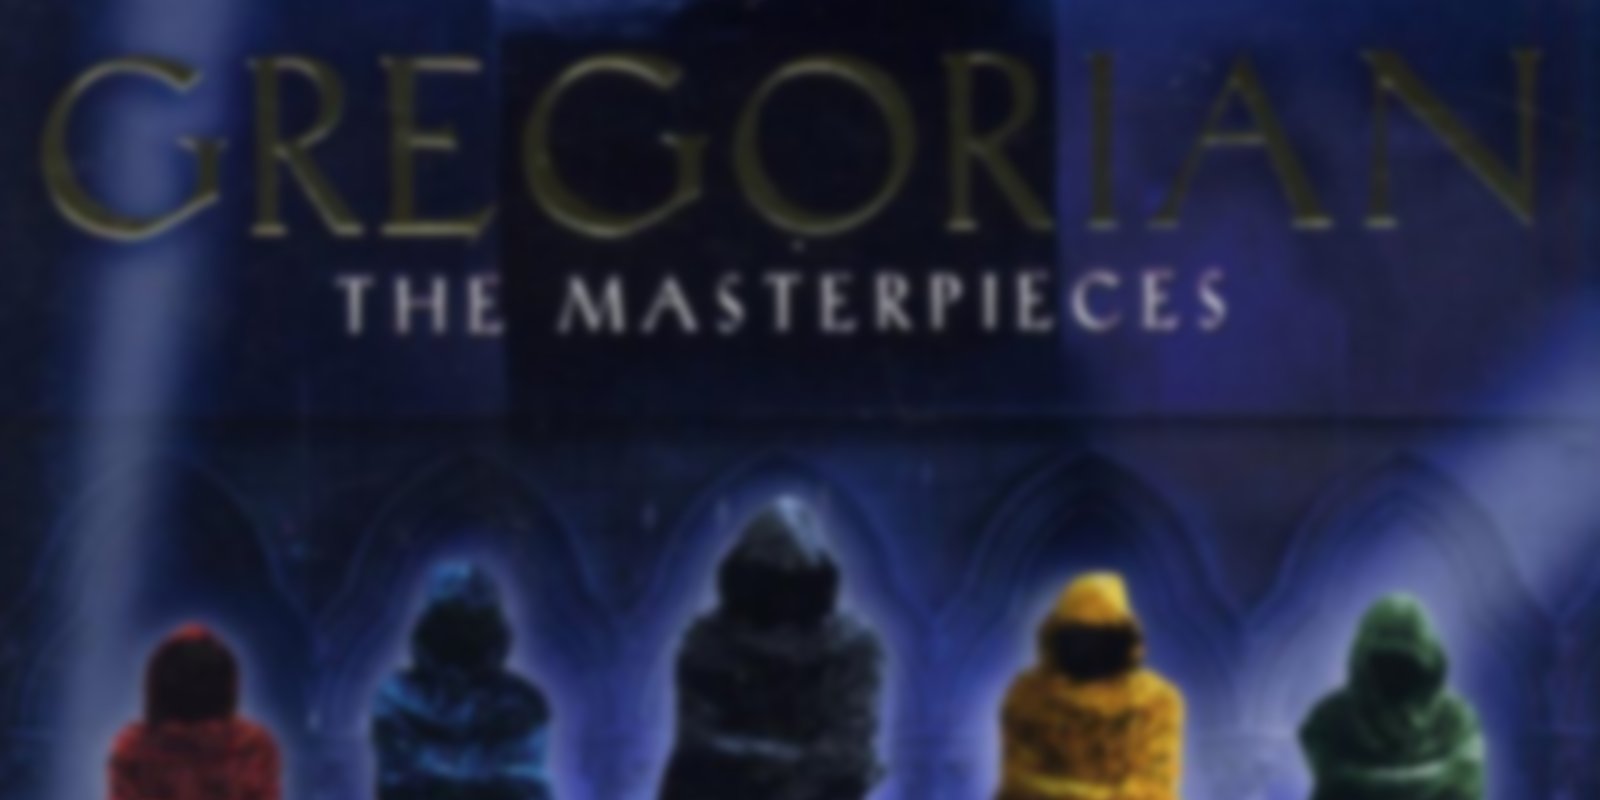 Gregorian - The Masterpieces